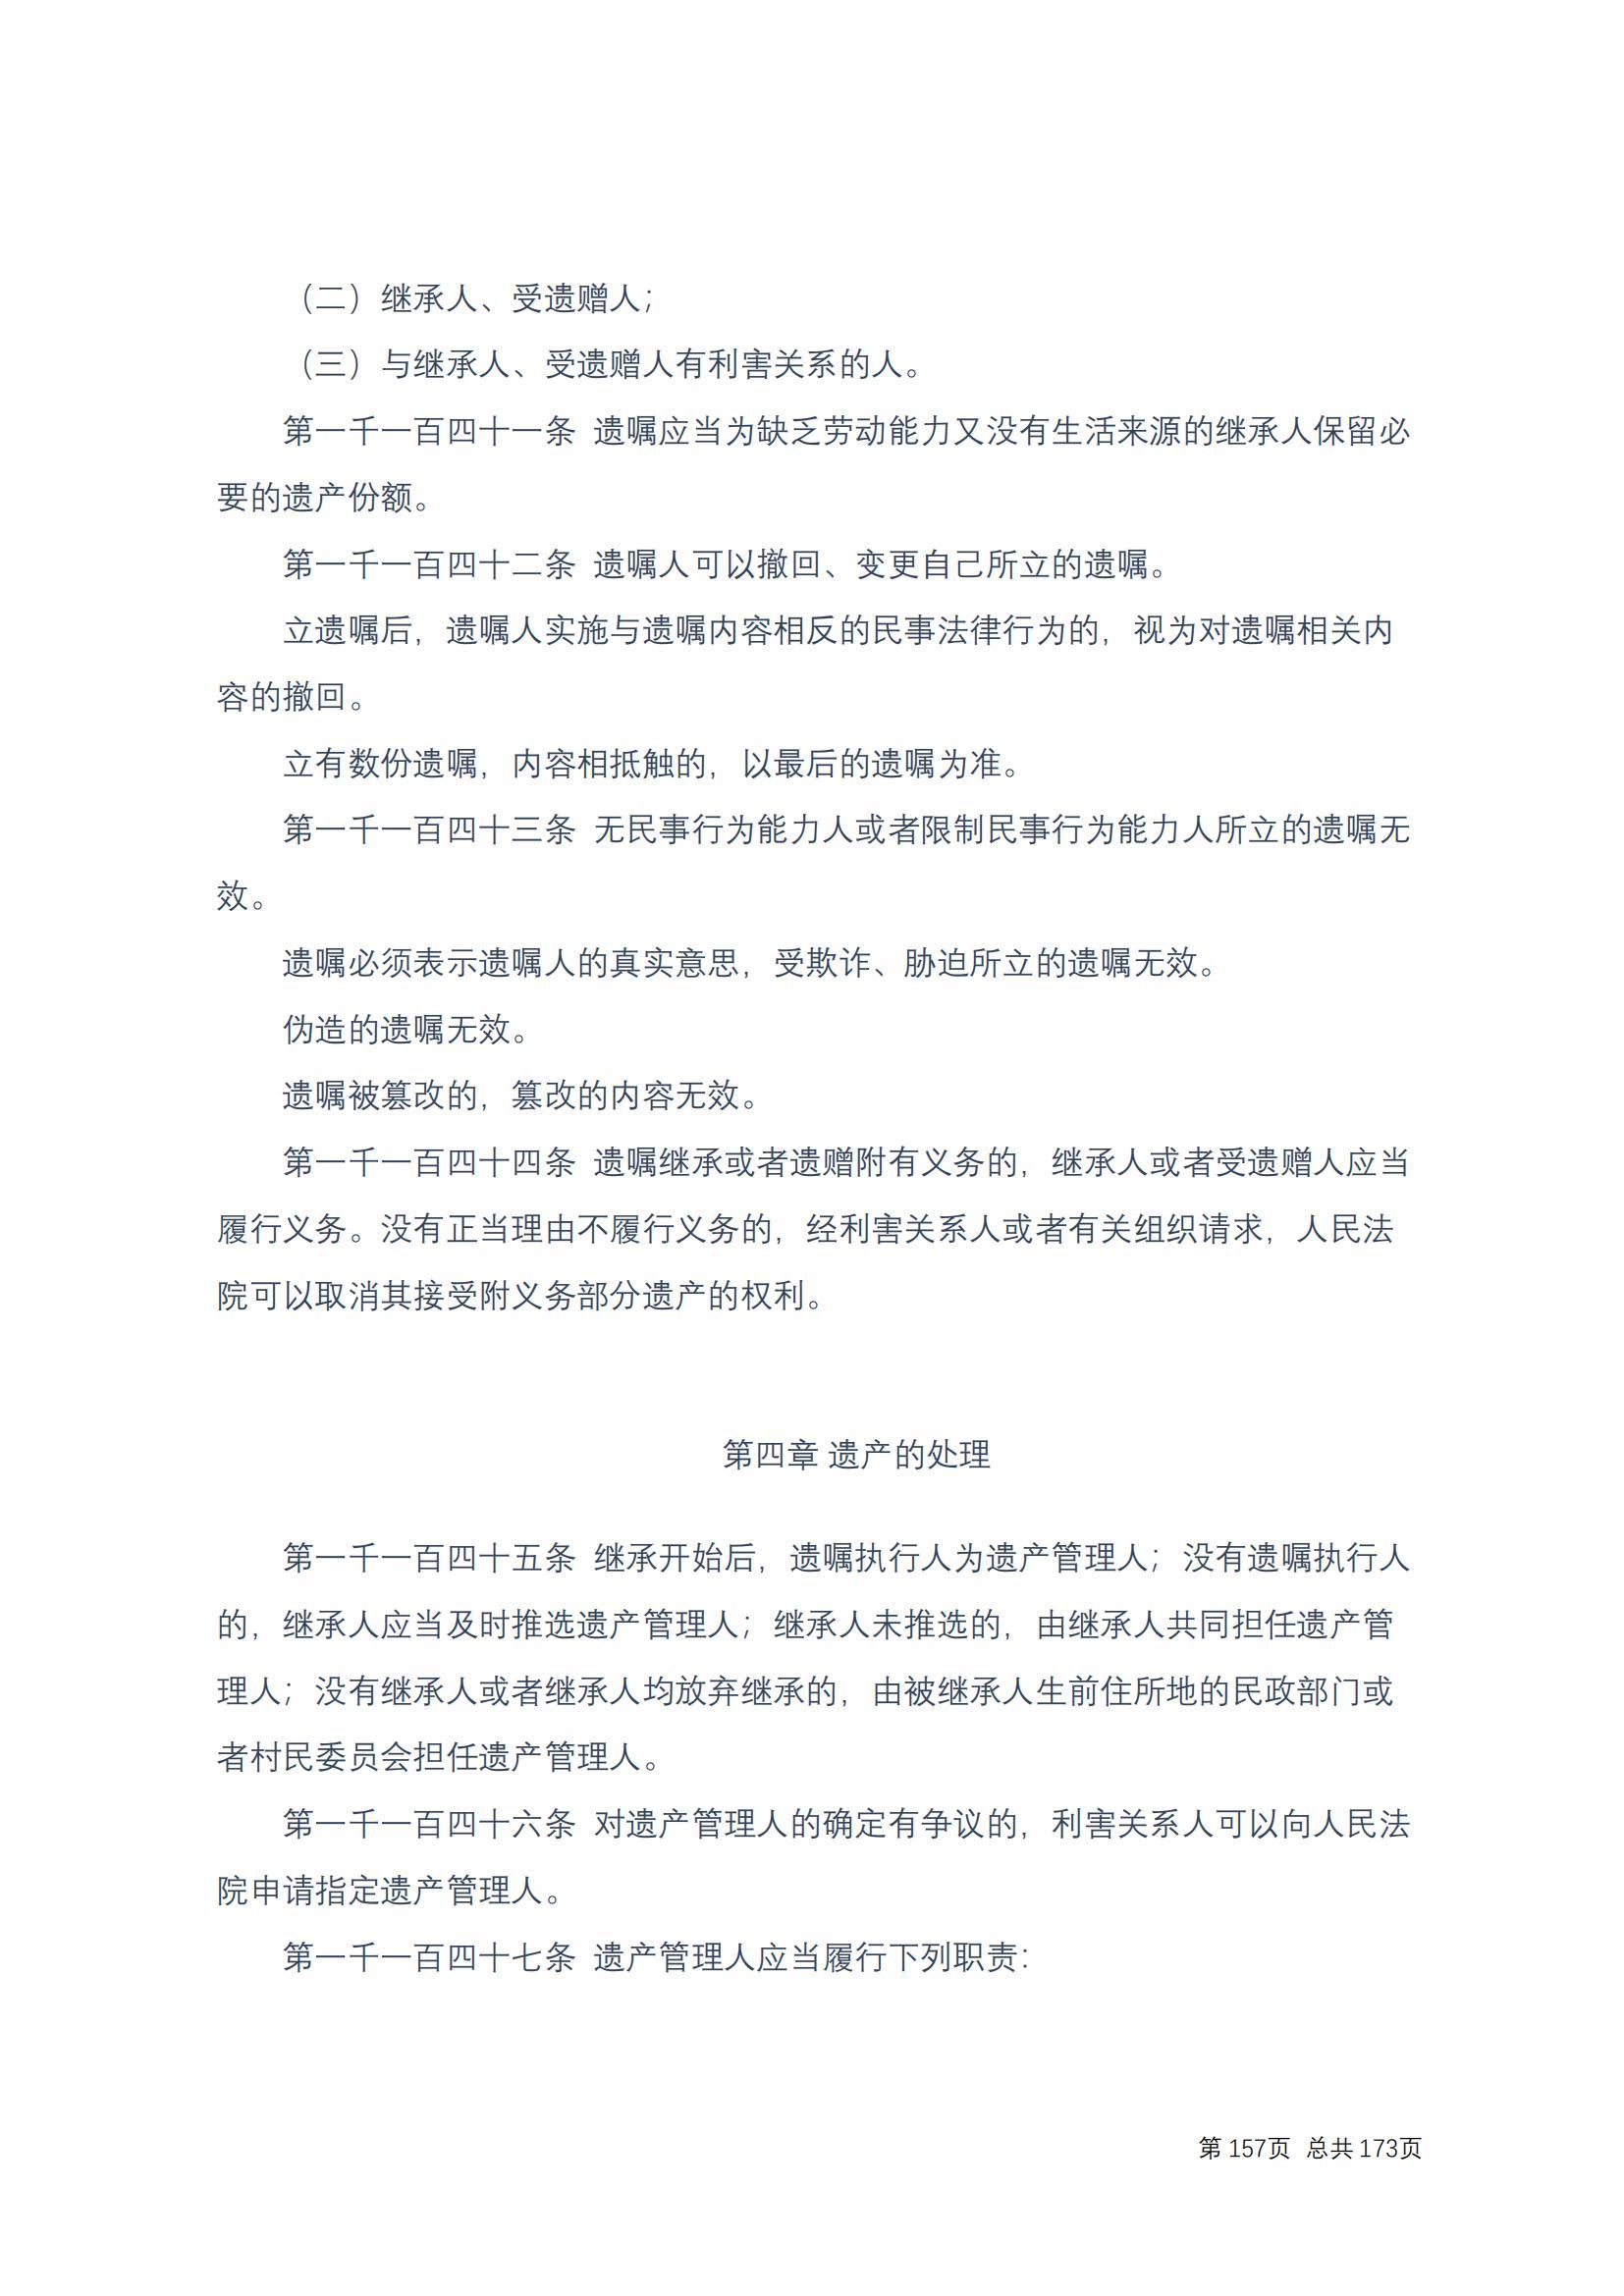 中华人民共和国民法典 修改过_156